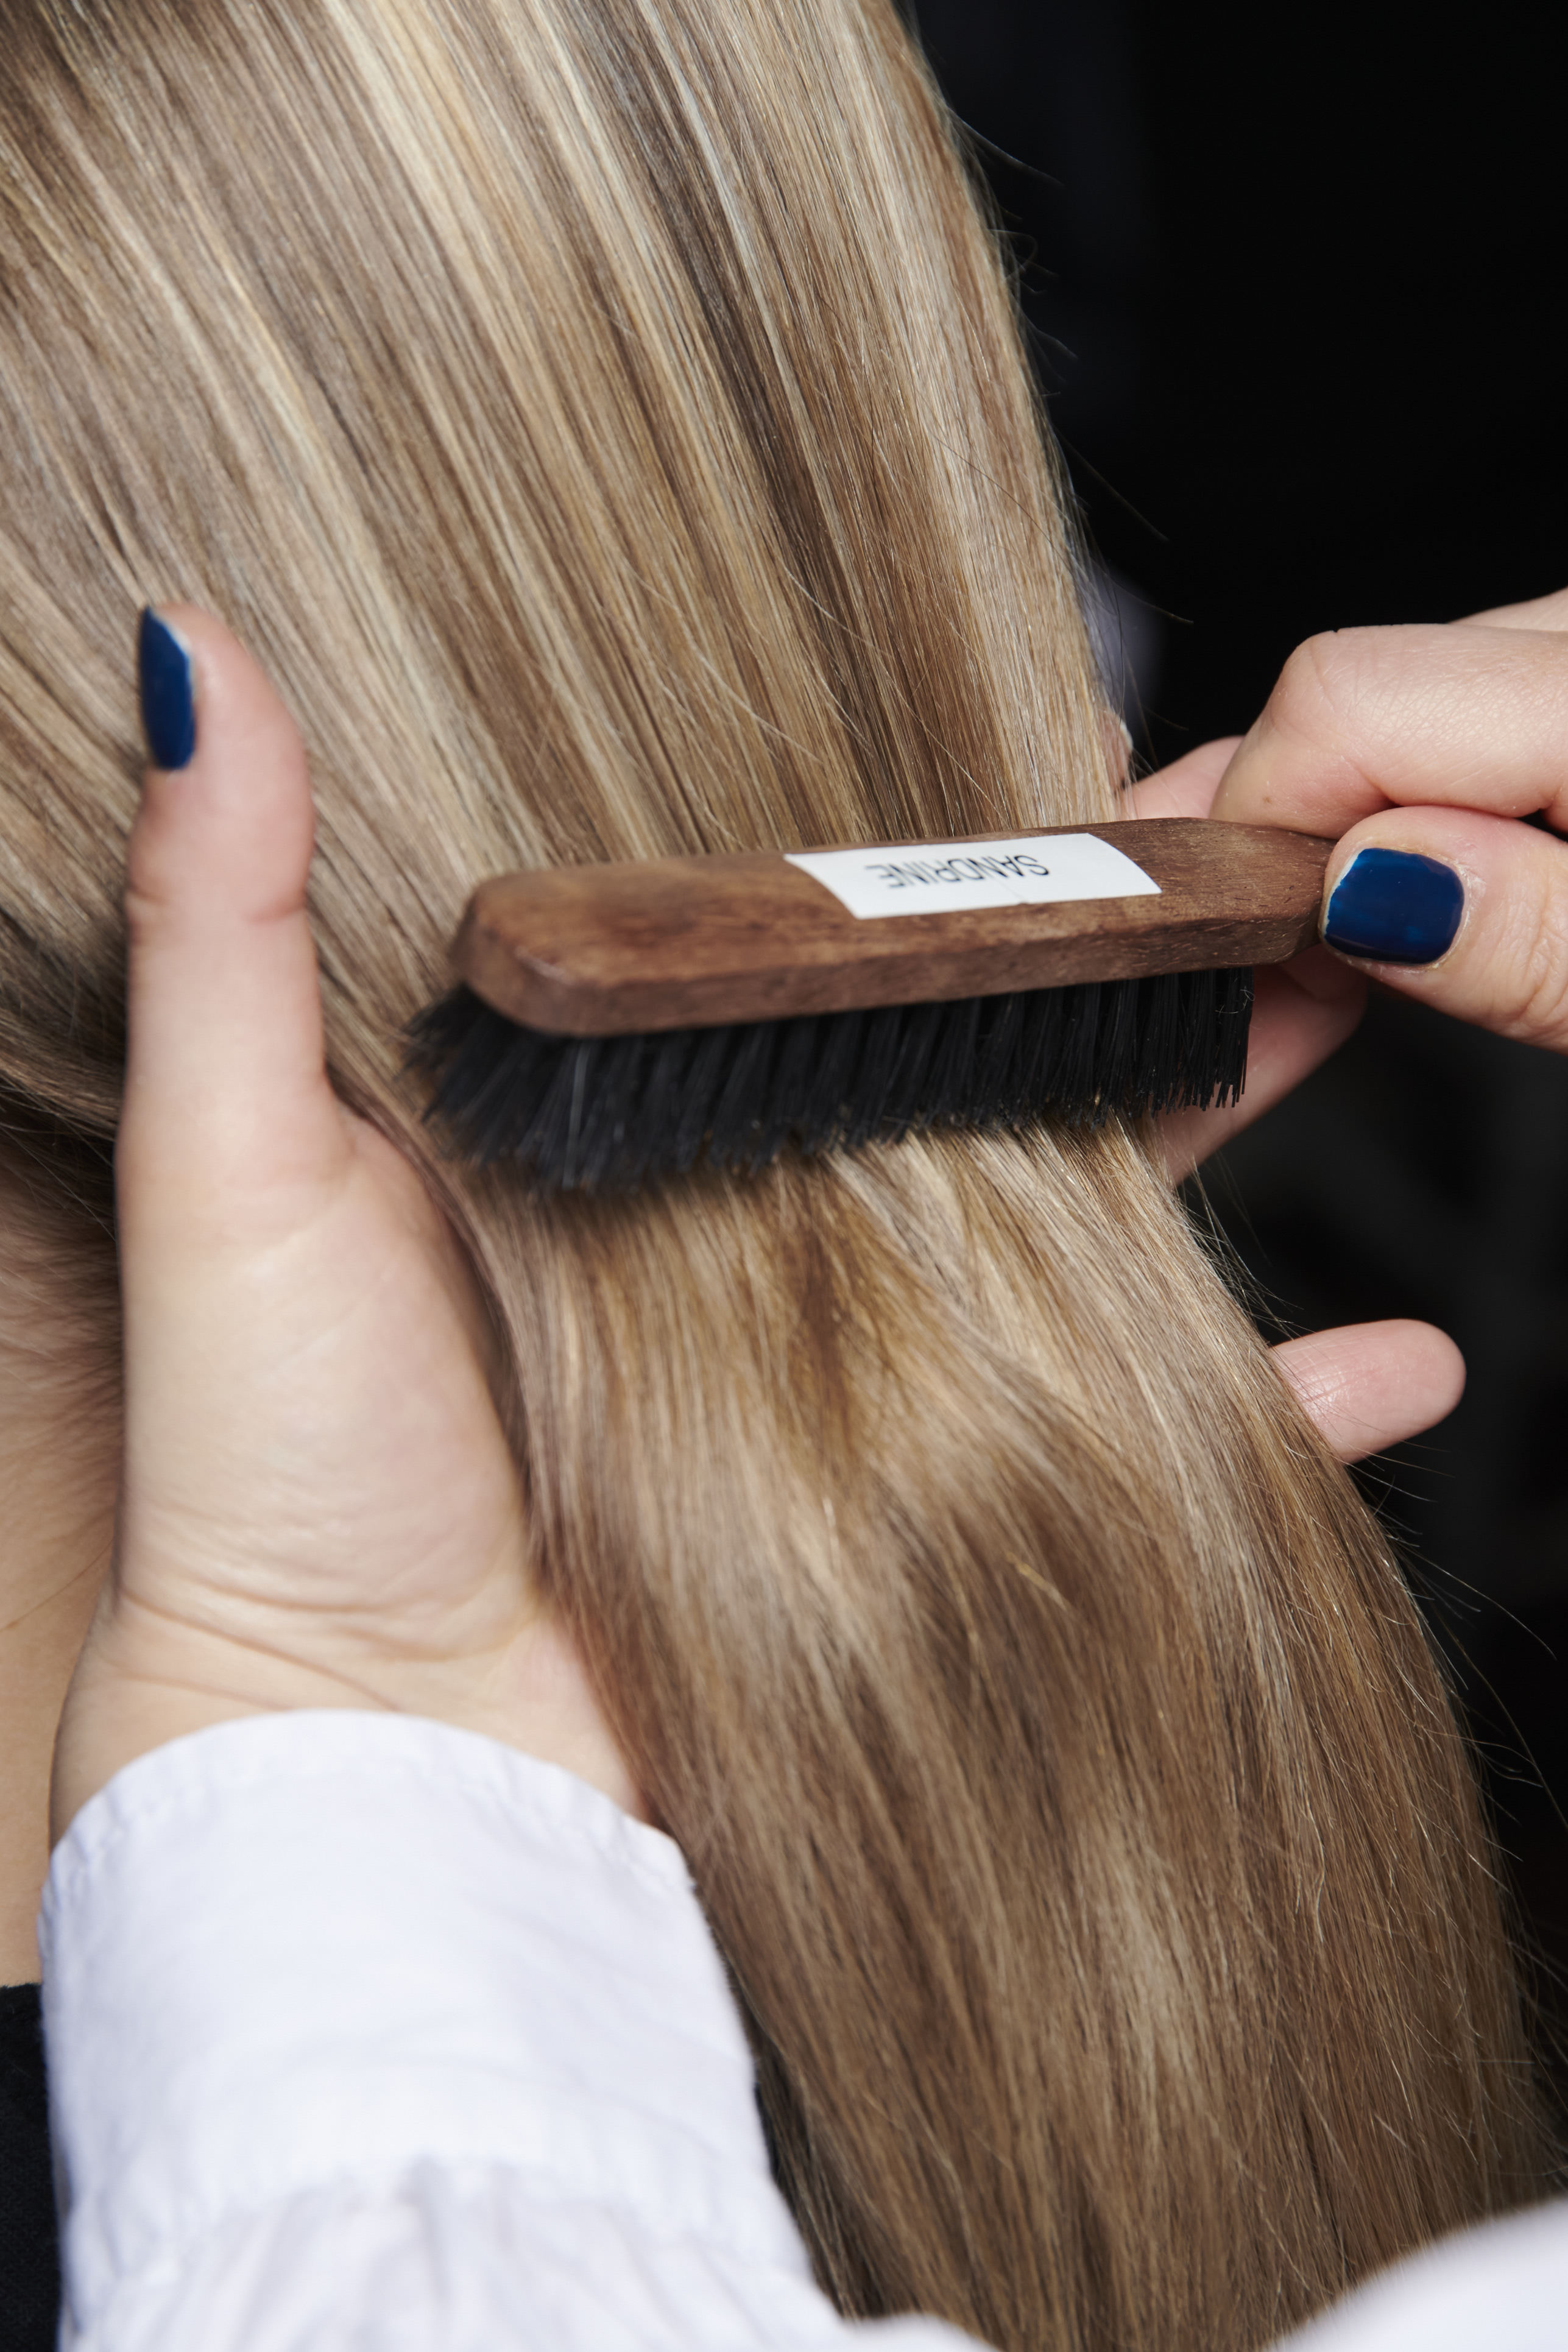 Cómo limpiar correctamente el cepillo del pelo  Modesta Cassinello